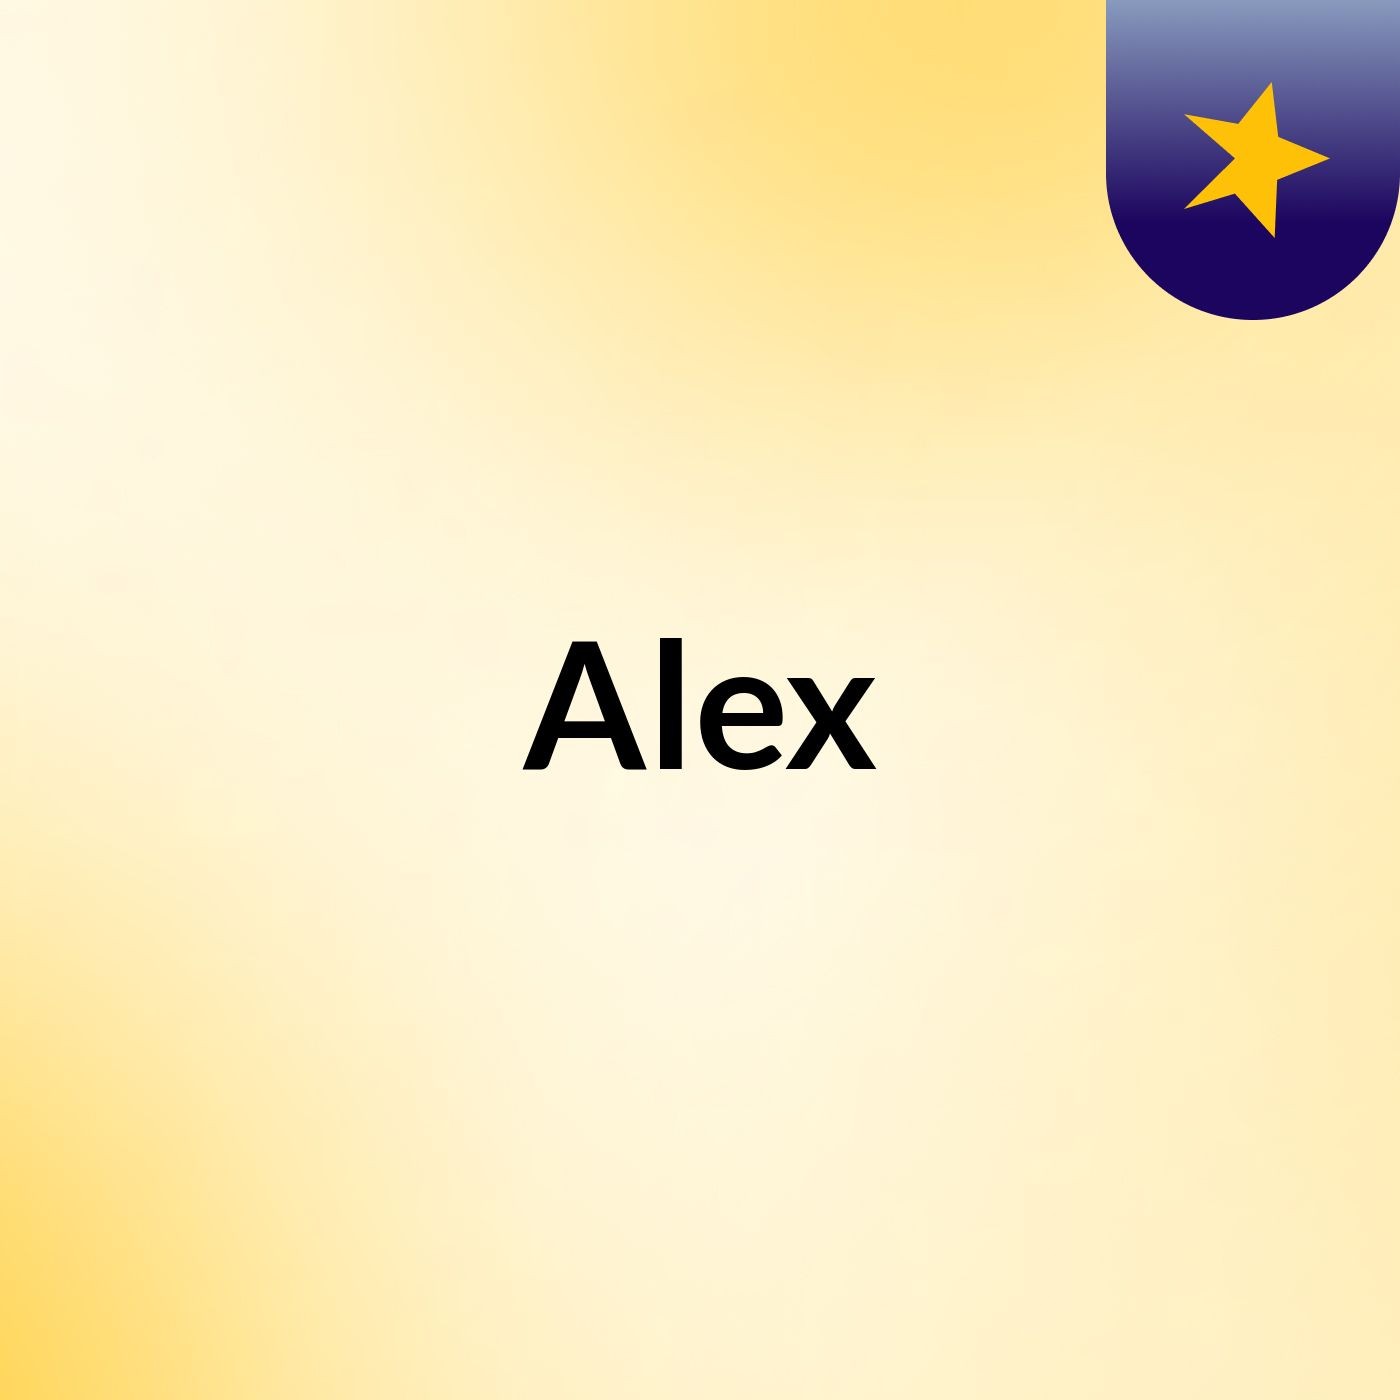 Episode 72 - Alex